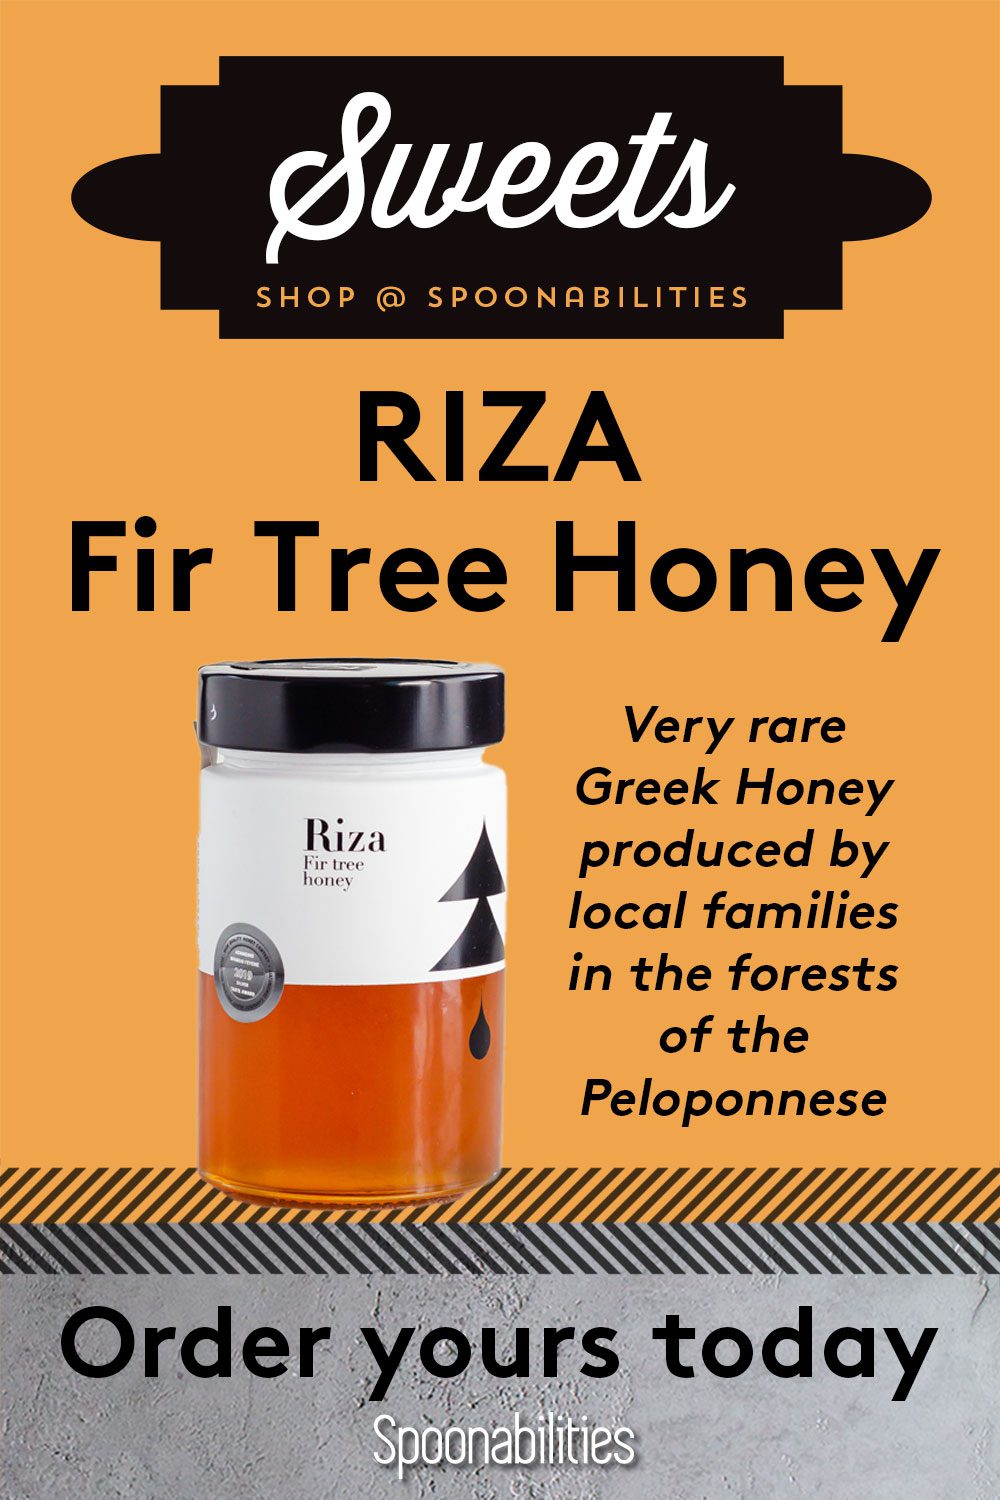 Riza Fir Tree Honey